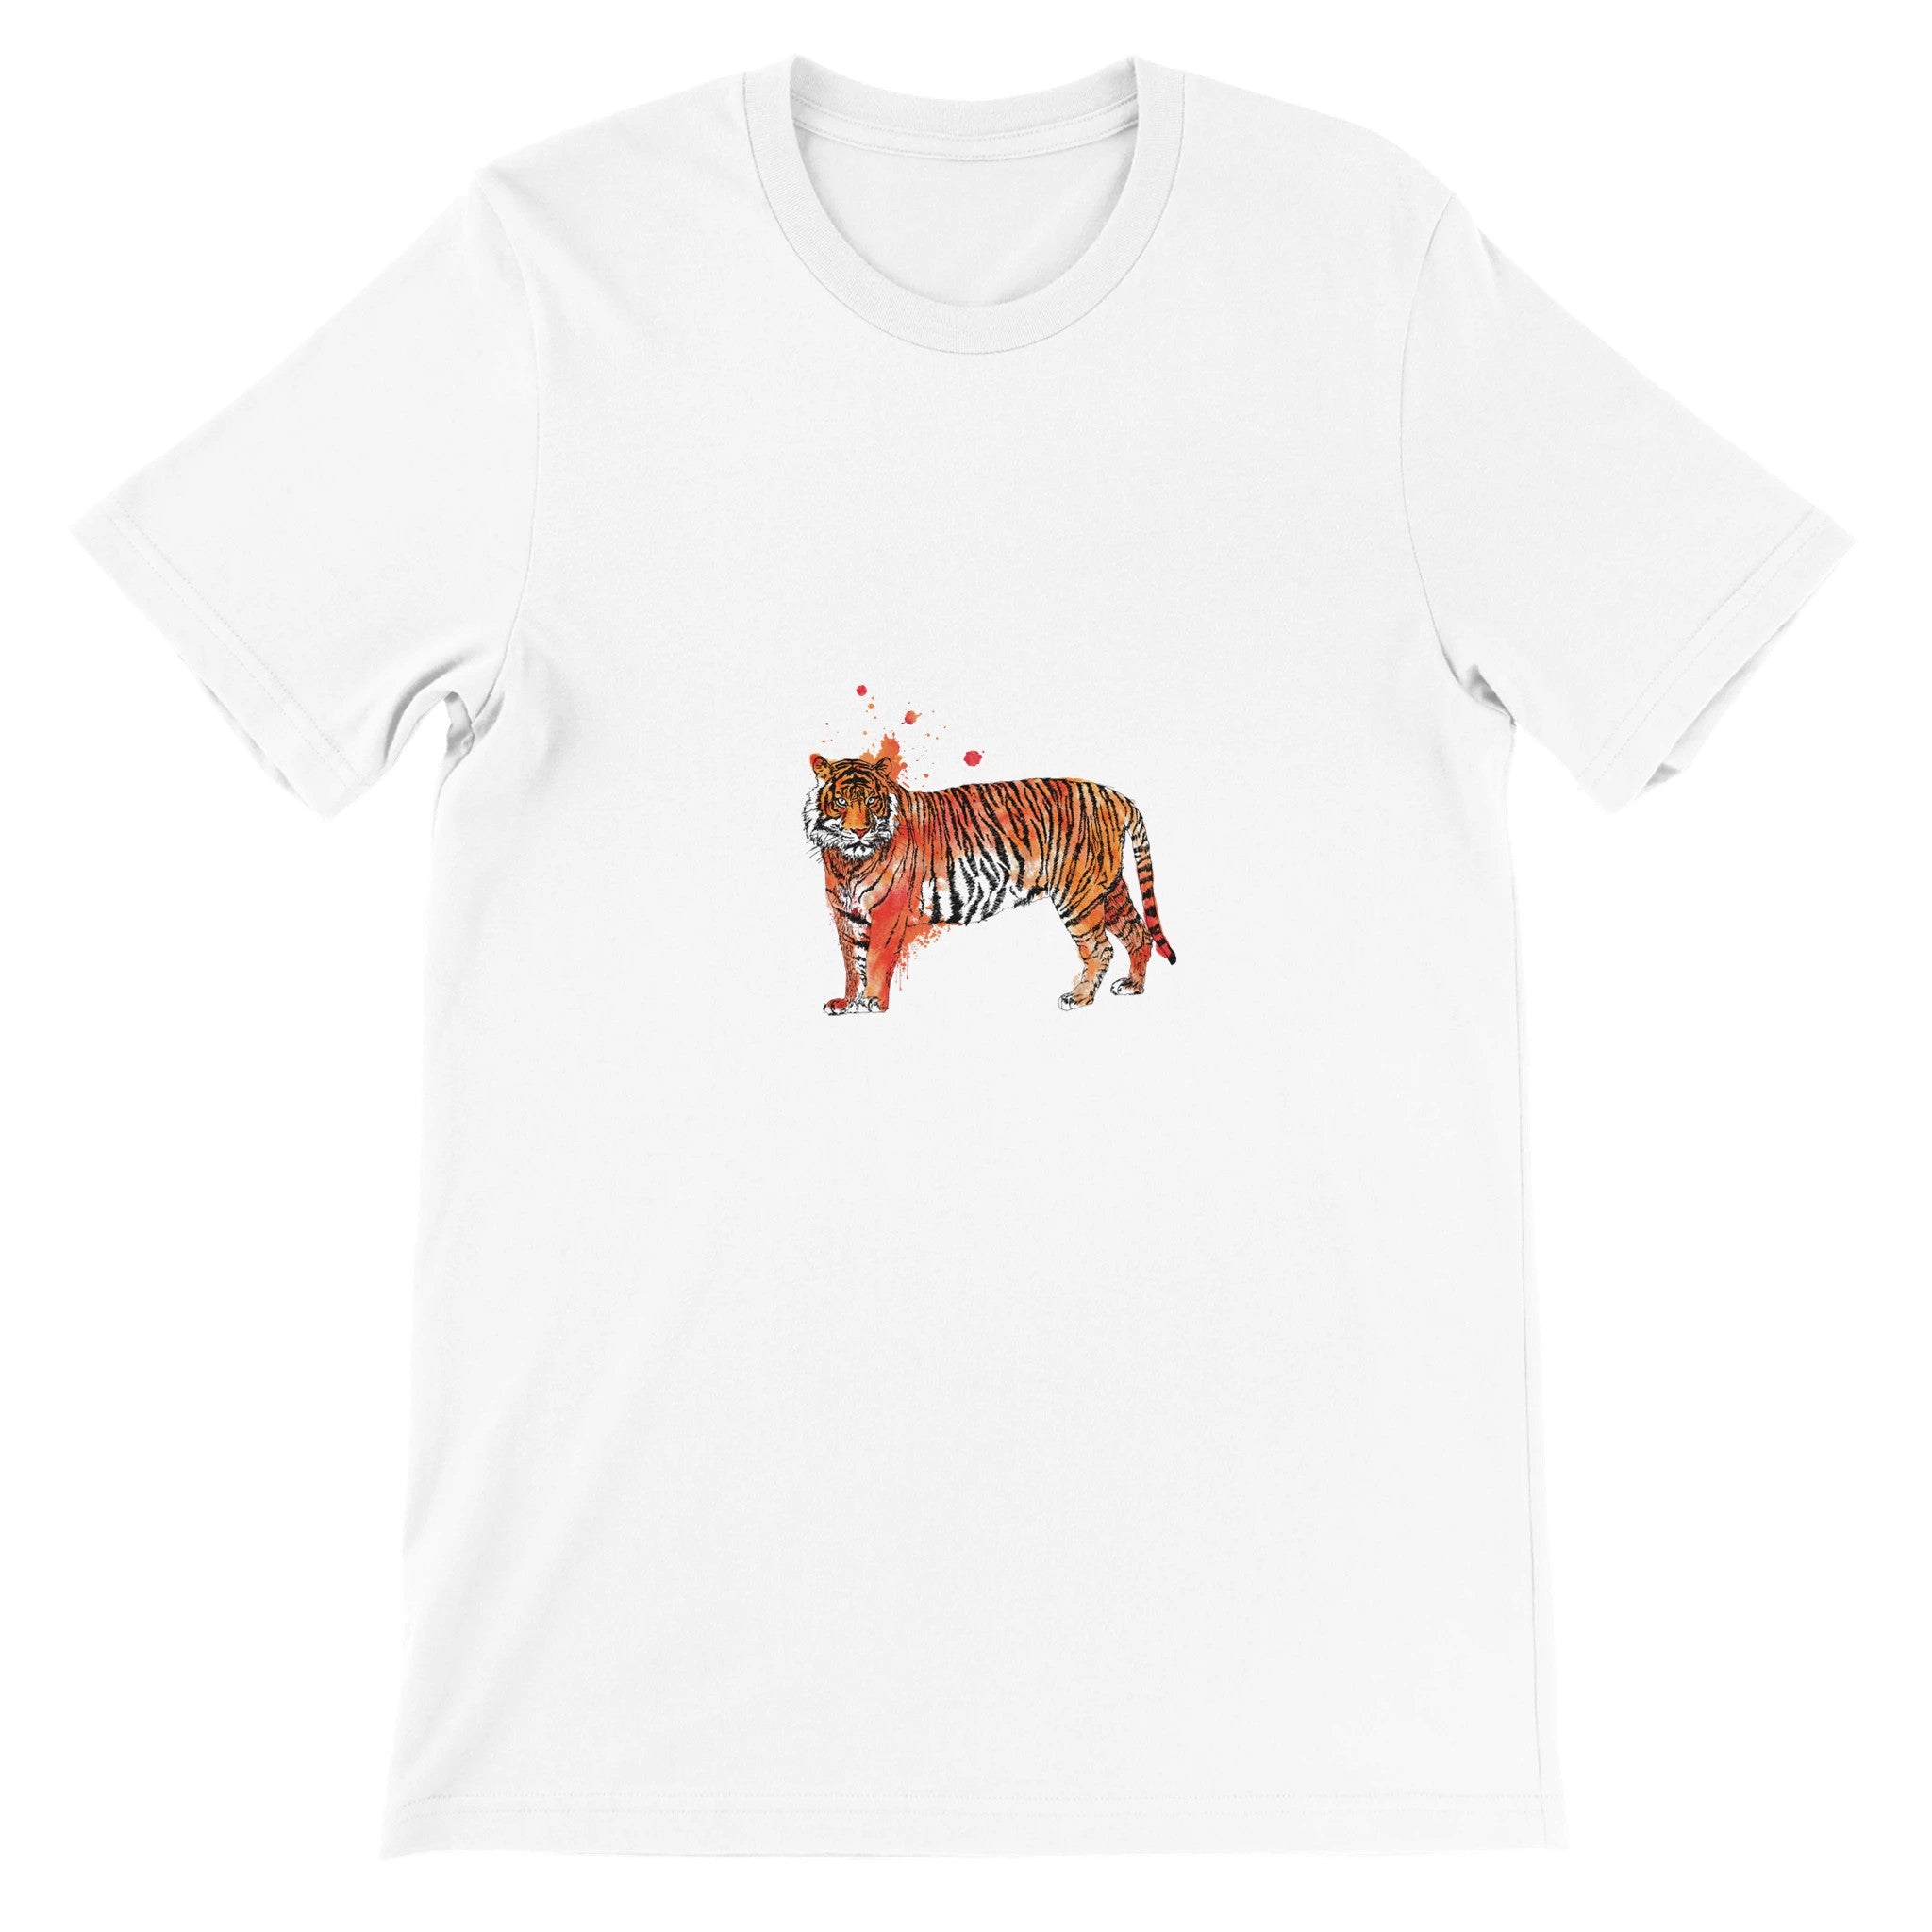 Tiger Illustration Crewneck T-shirt - Optimalprint